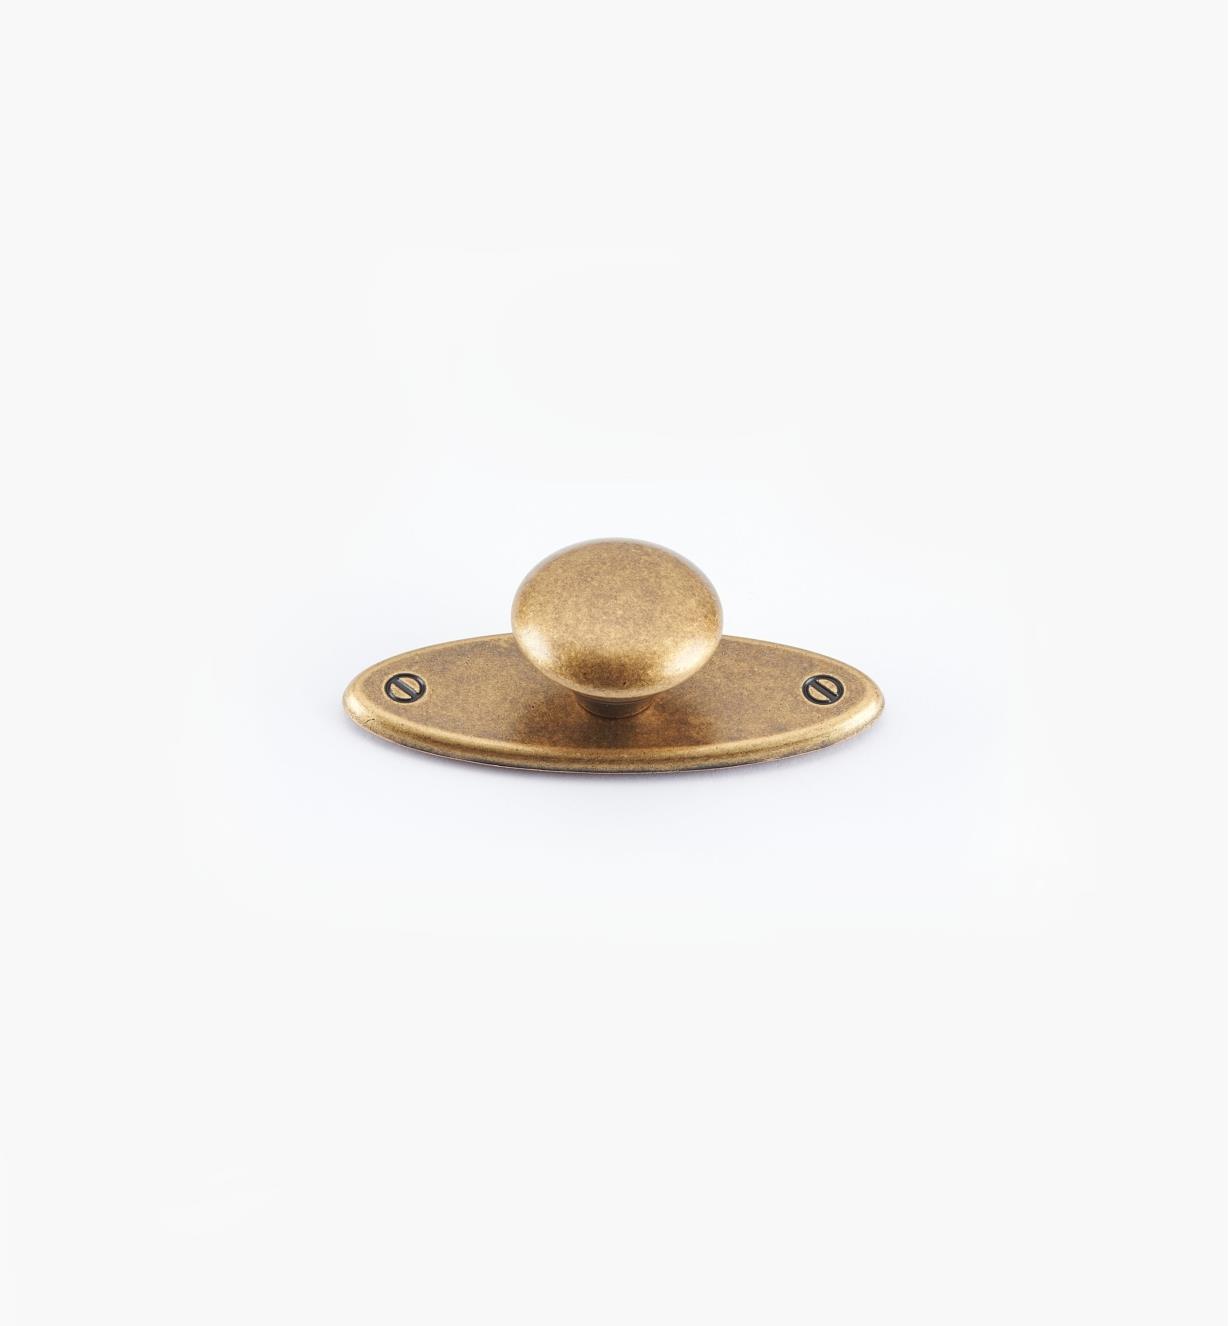 01X3030 - Bouton sur platine ovale, fini laiton antique, 65 mm x 25 mm